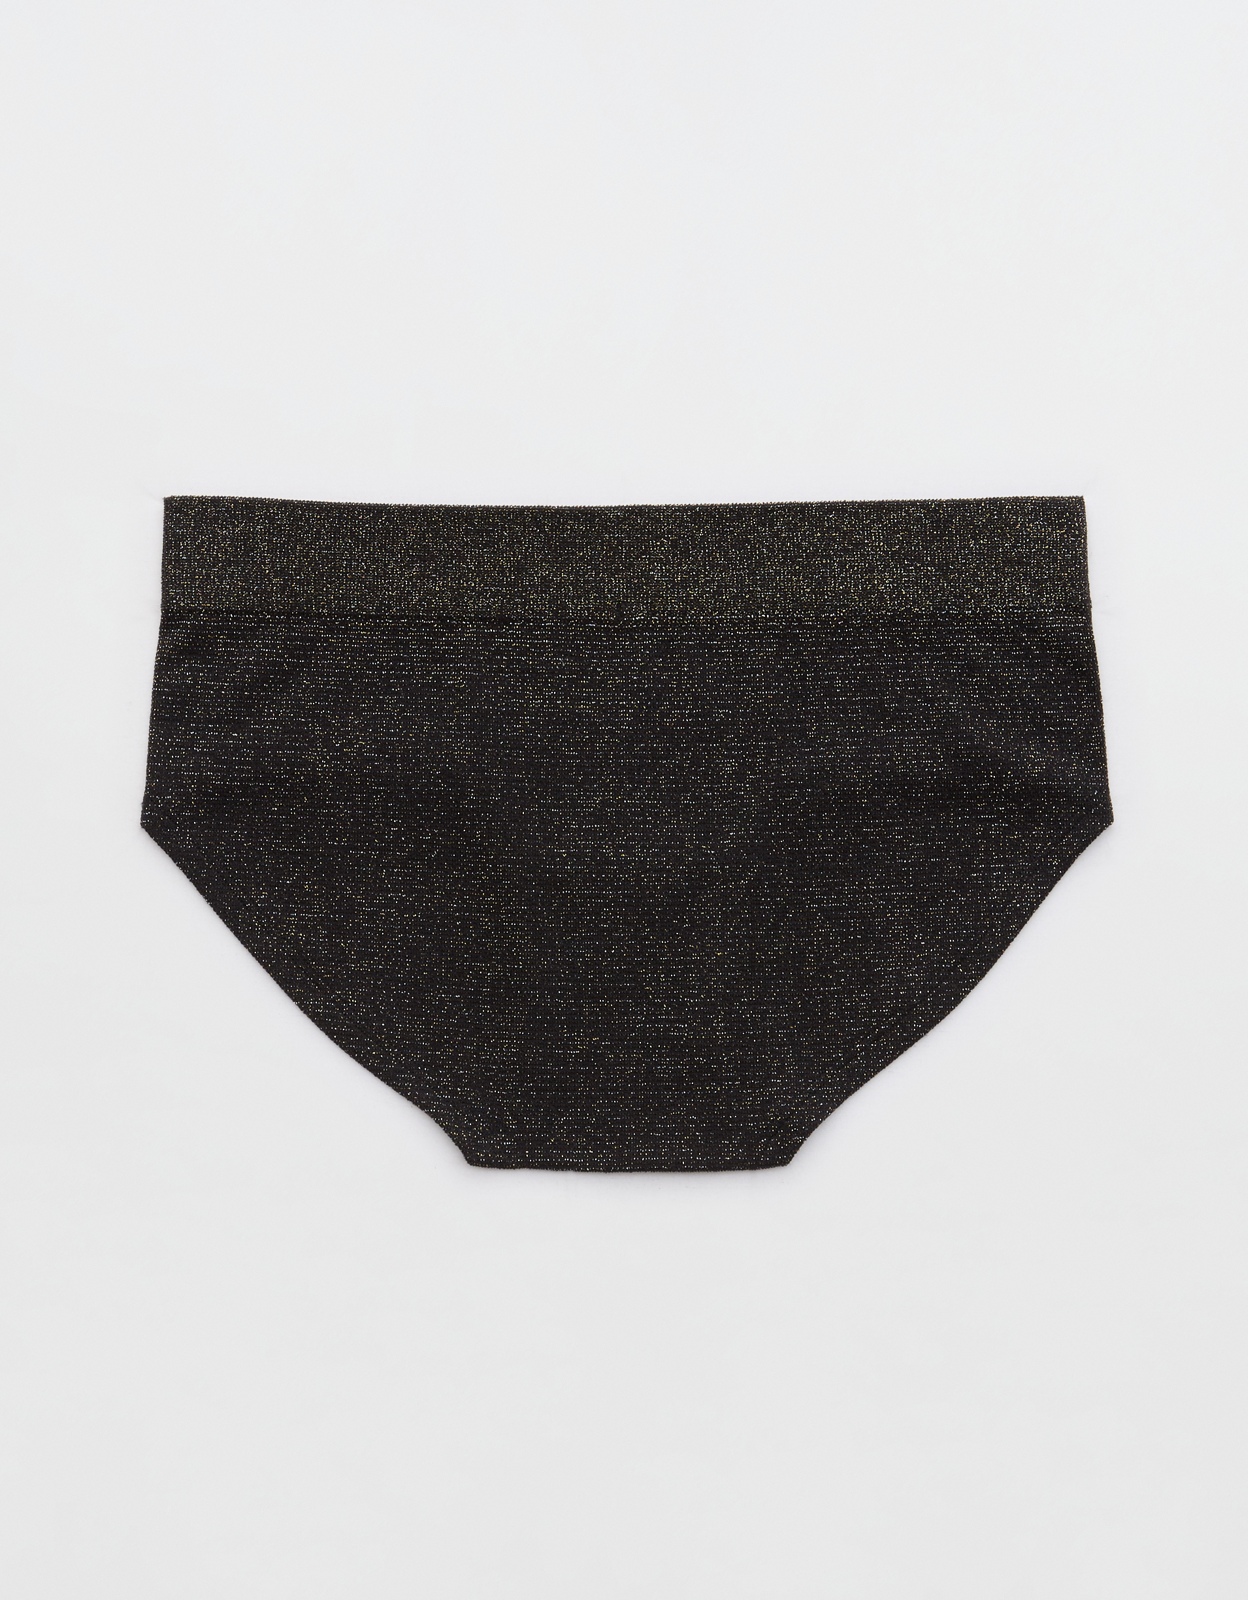 Shop Superchill Seamless Lurex Boybrief Underwear online